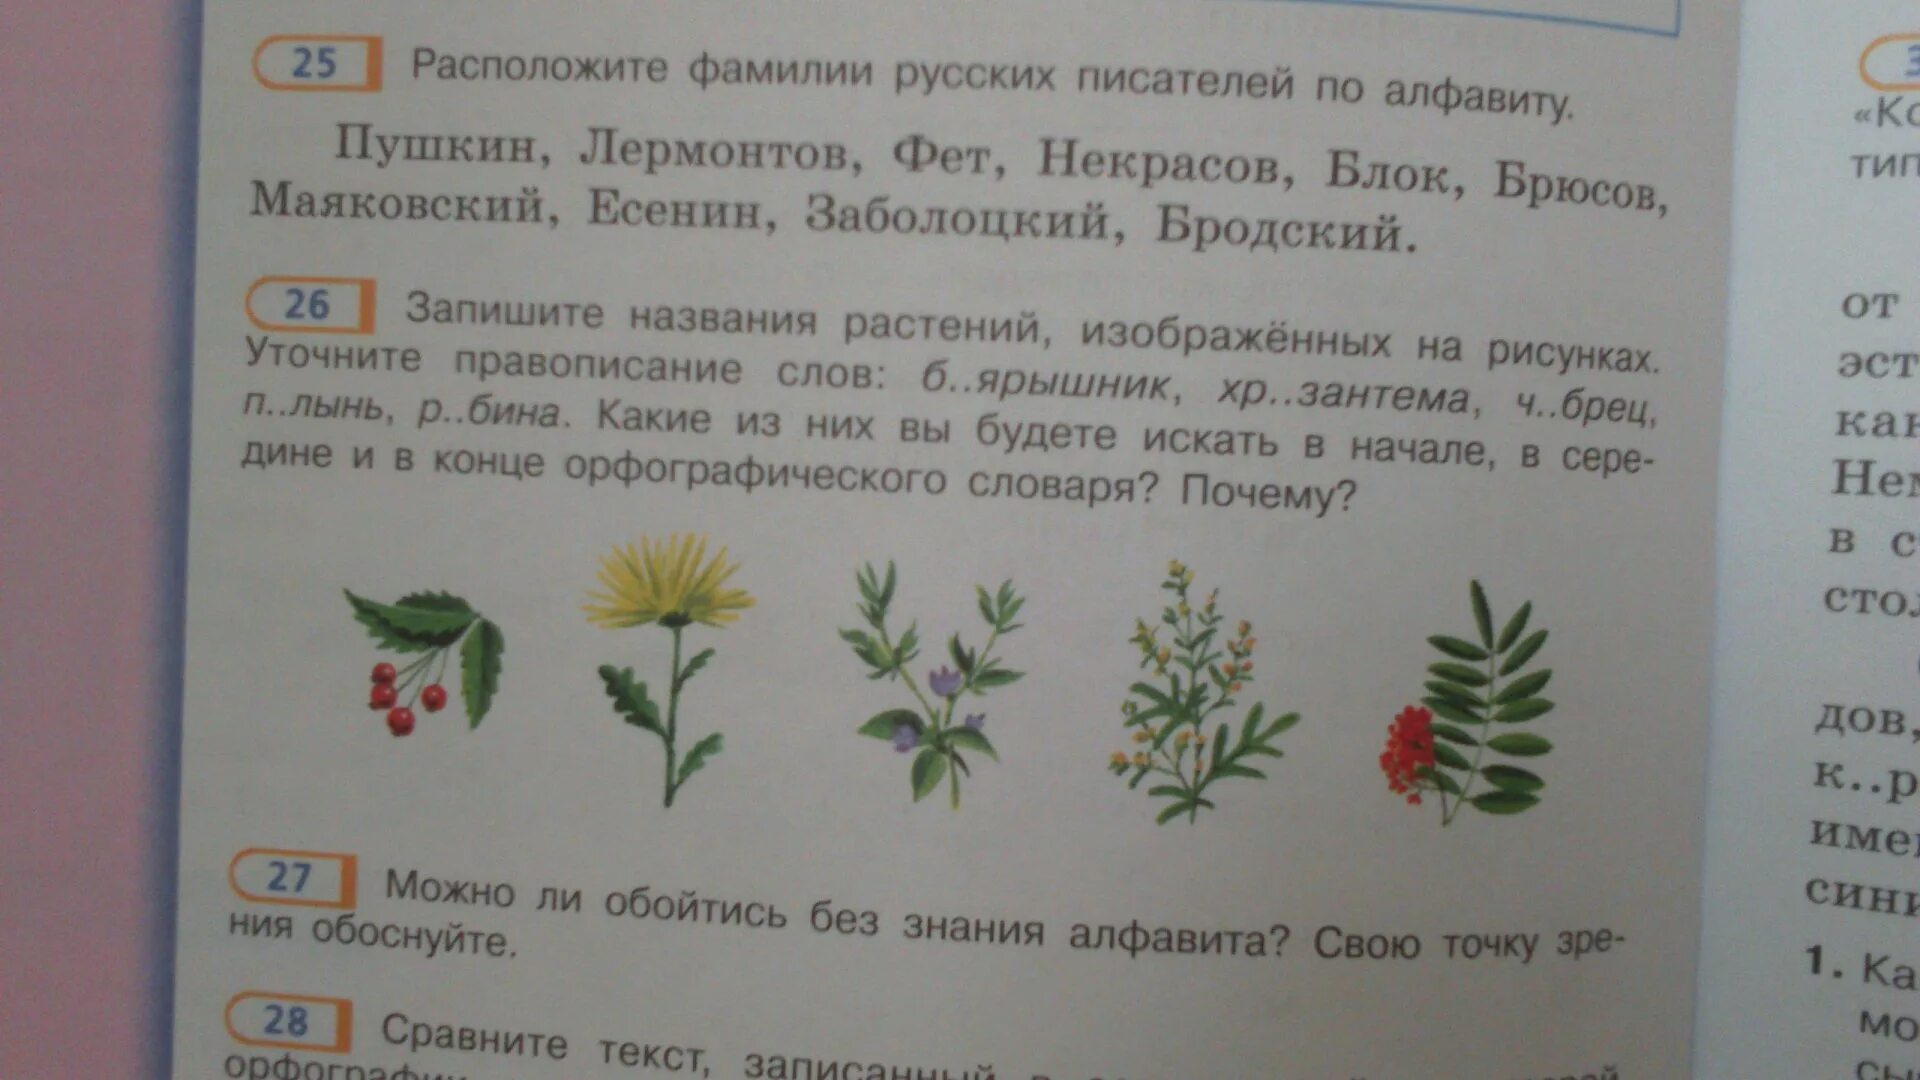 Название растений из двух слов. Запиши названия растений. Растения из орфографического словаря. Названия растений по русскому языку. Слова называющие растения.